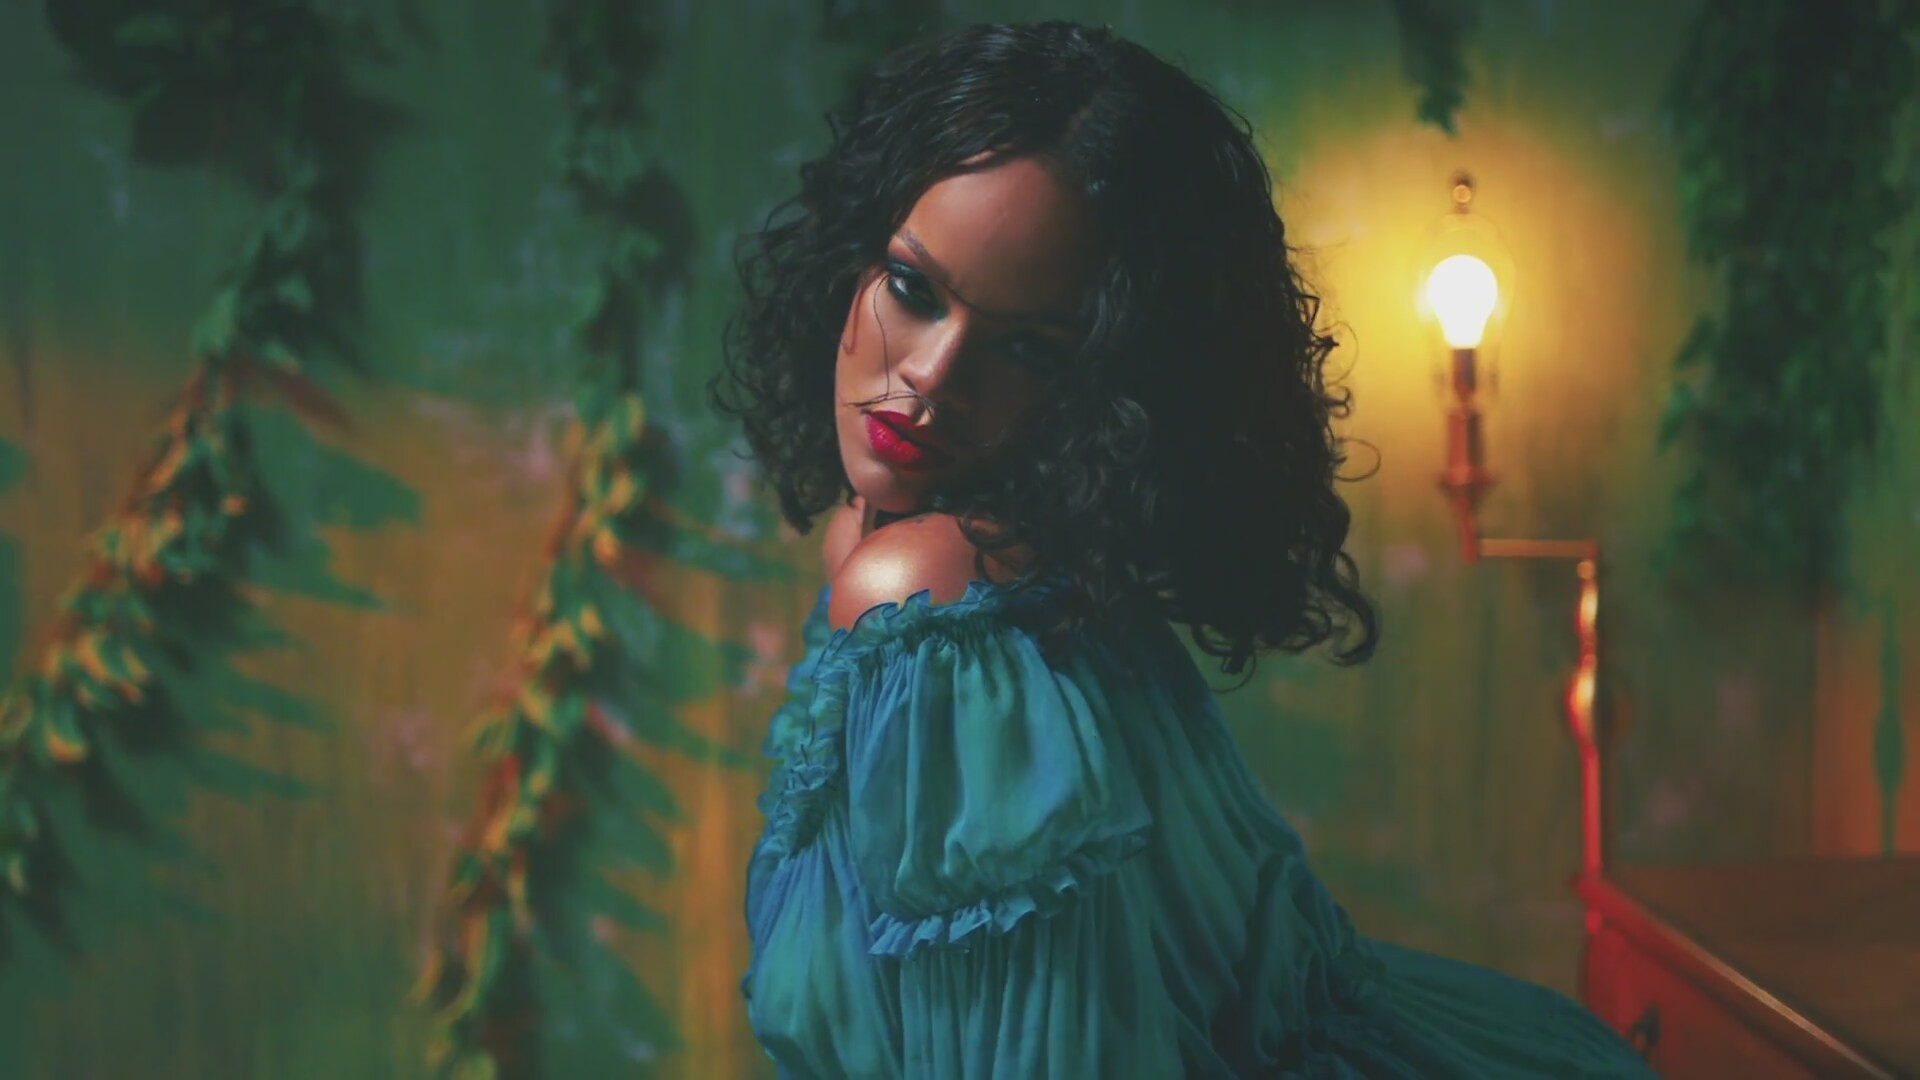 1920x1080 Watch: DJ Khaled's 'Wild Thoughts' Video Featuring Rihanna and Bryson Tiller